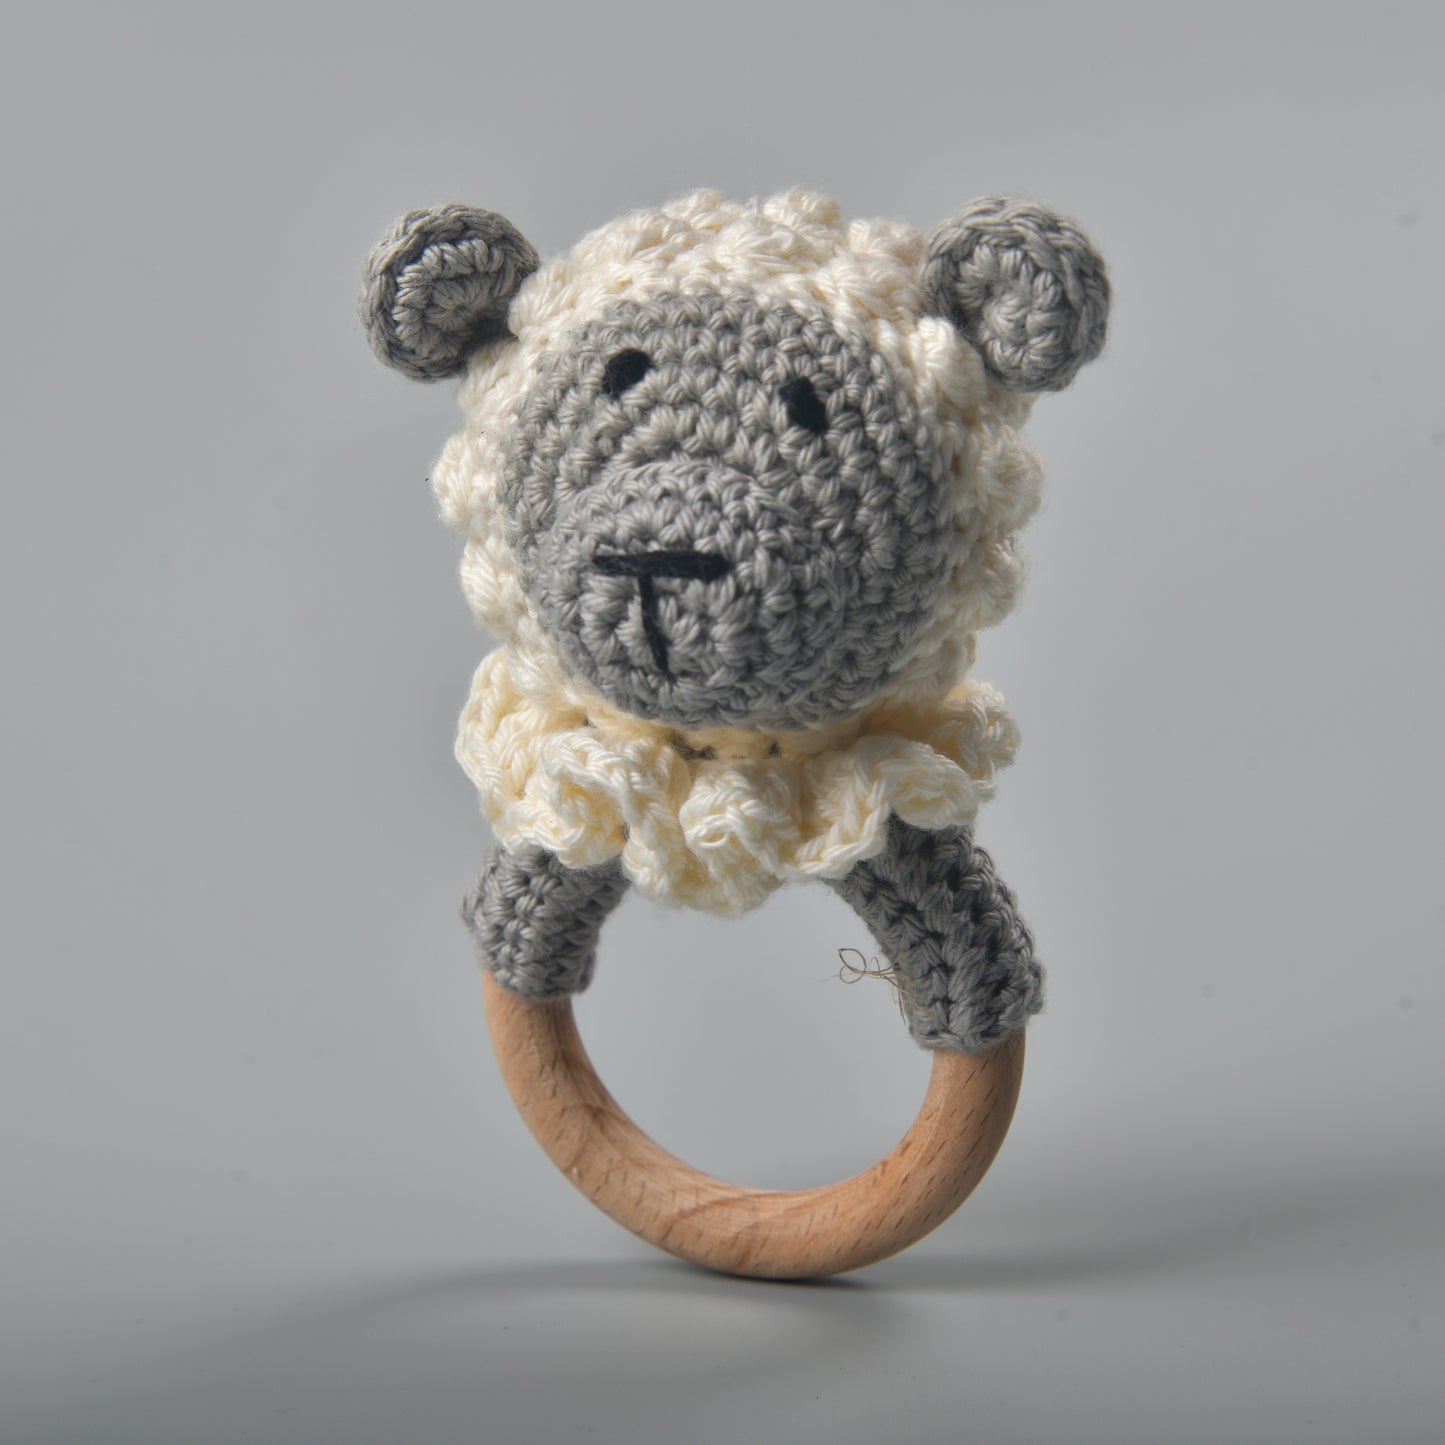 Shank the Sheep - Crochet Teether cum Rattle